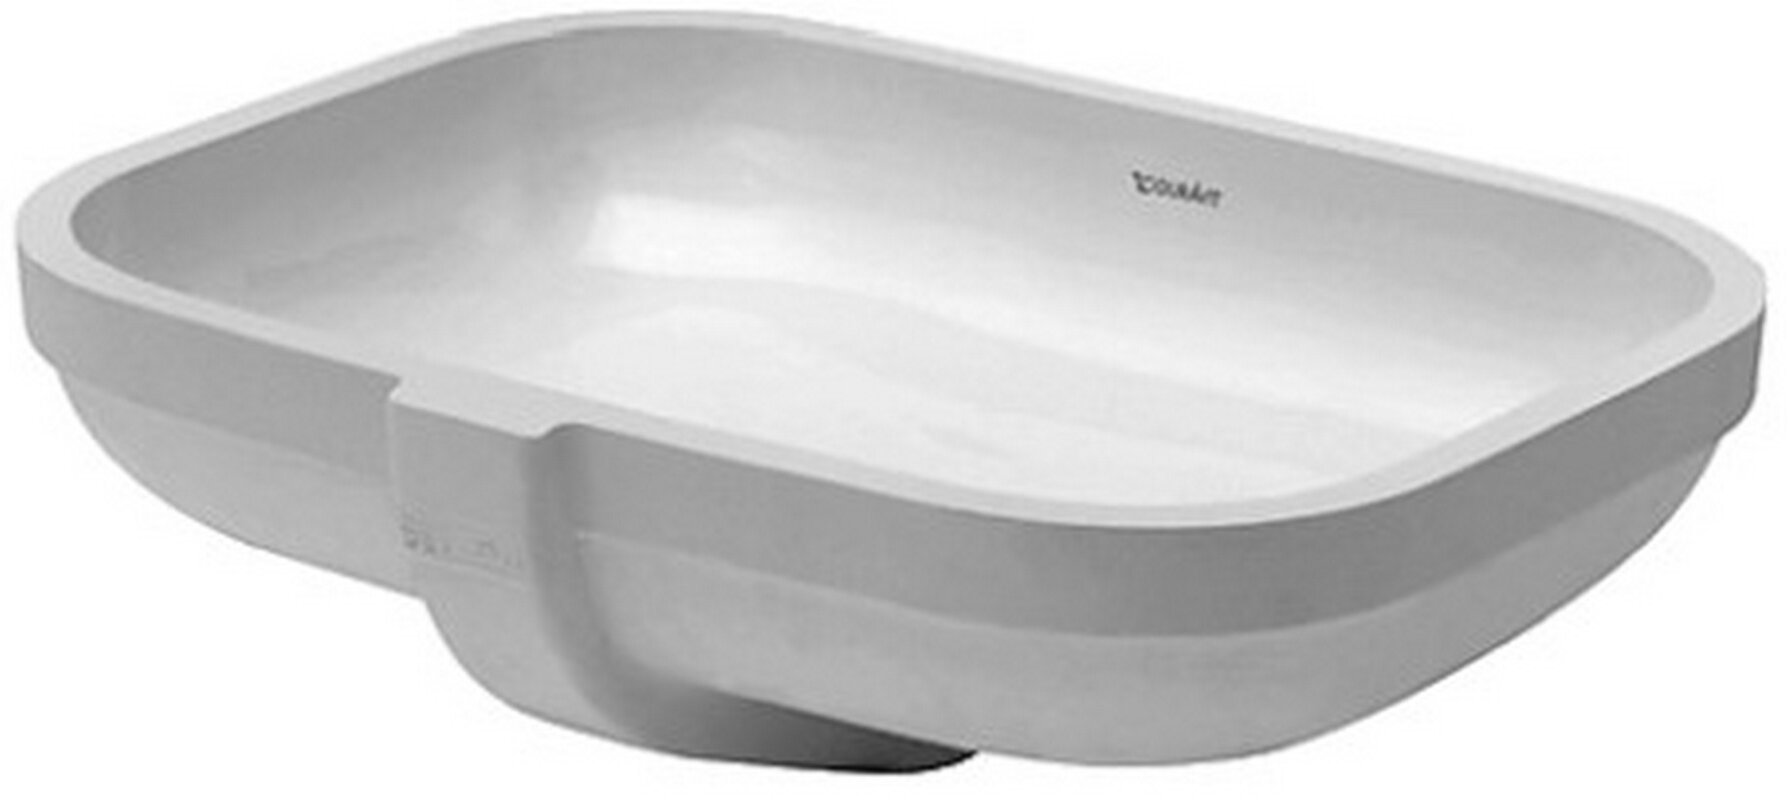 bristol ceramic rectangular undermount bathroom sink with overflow